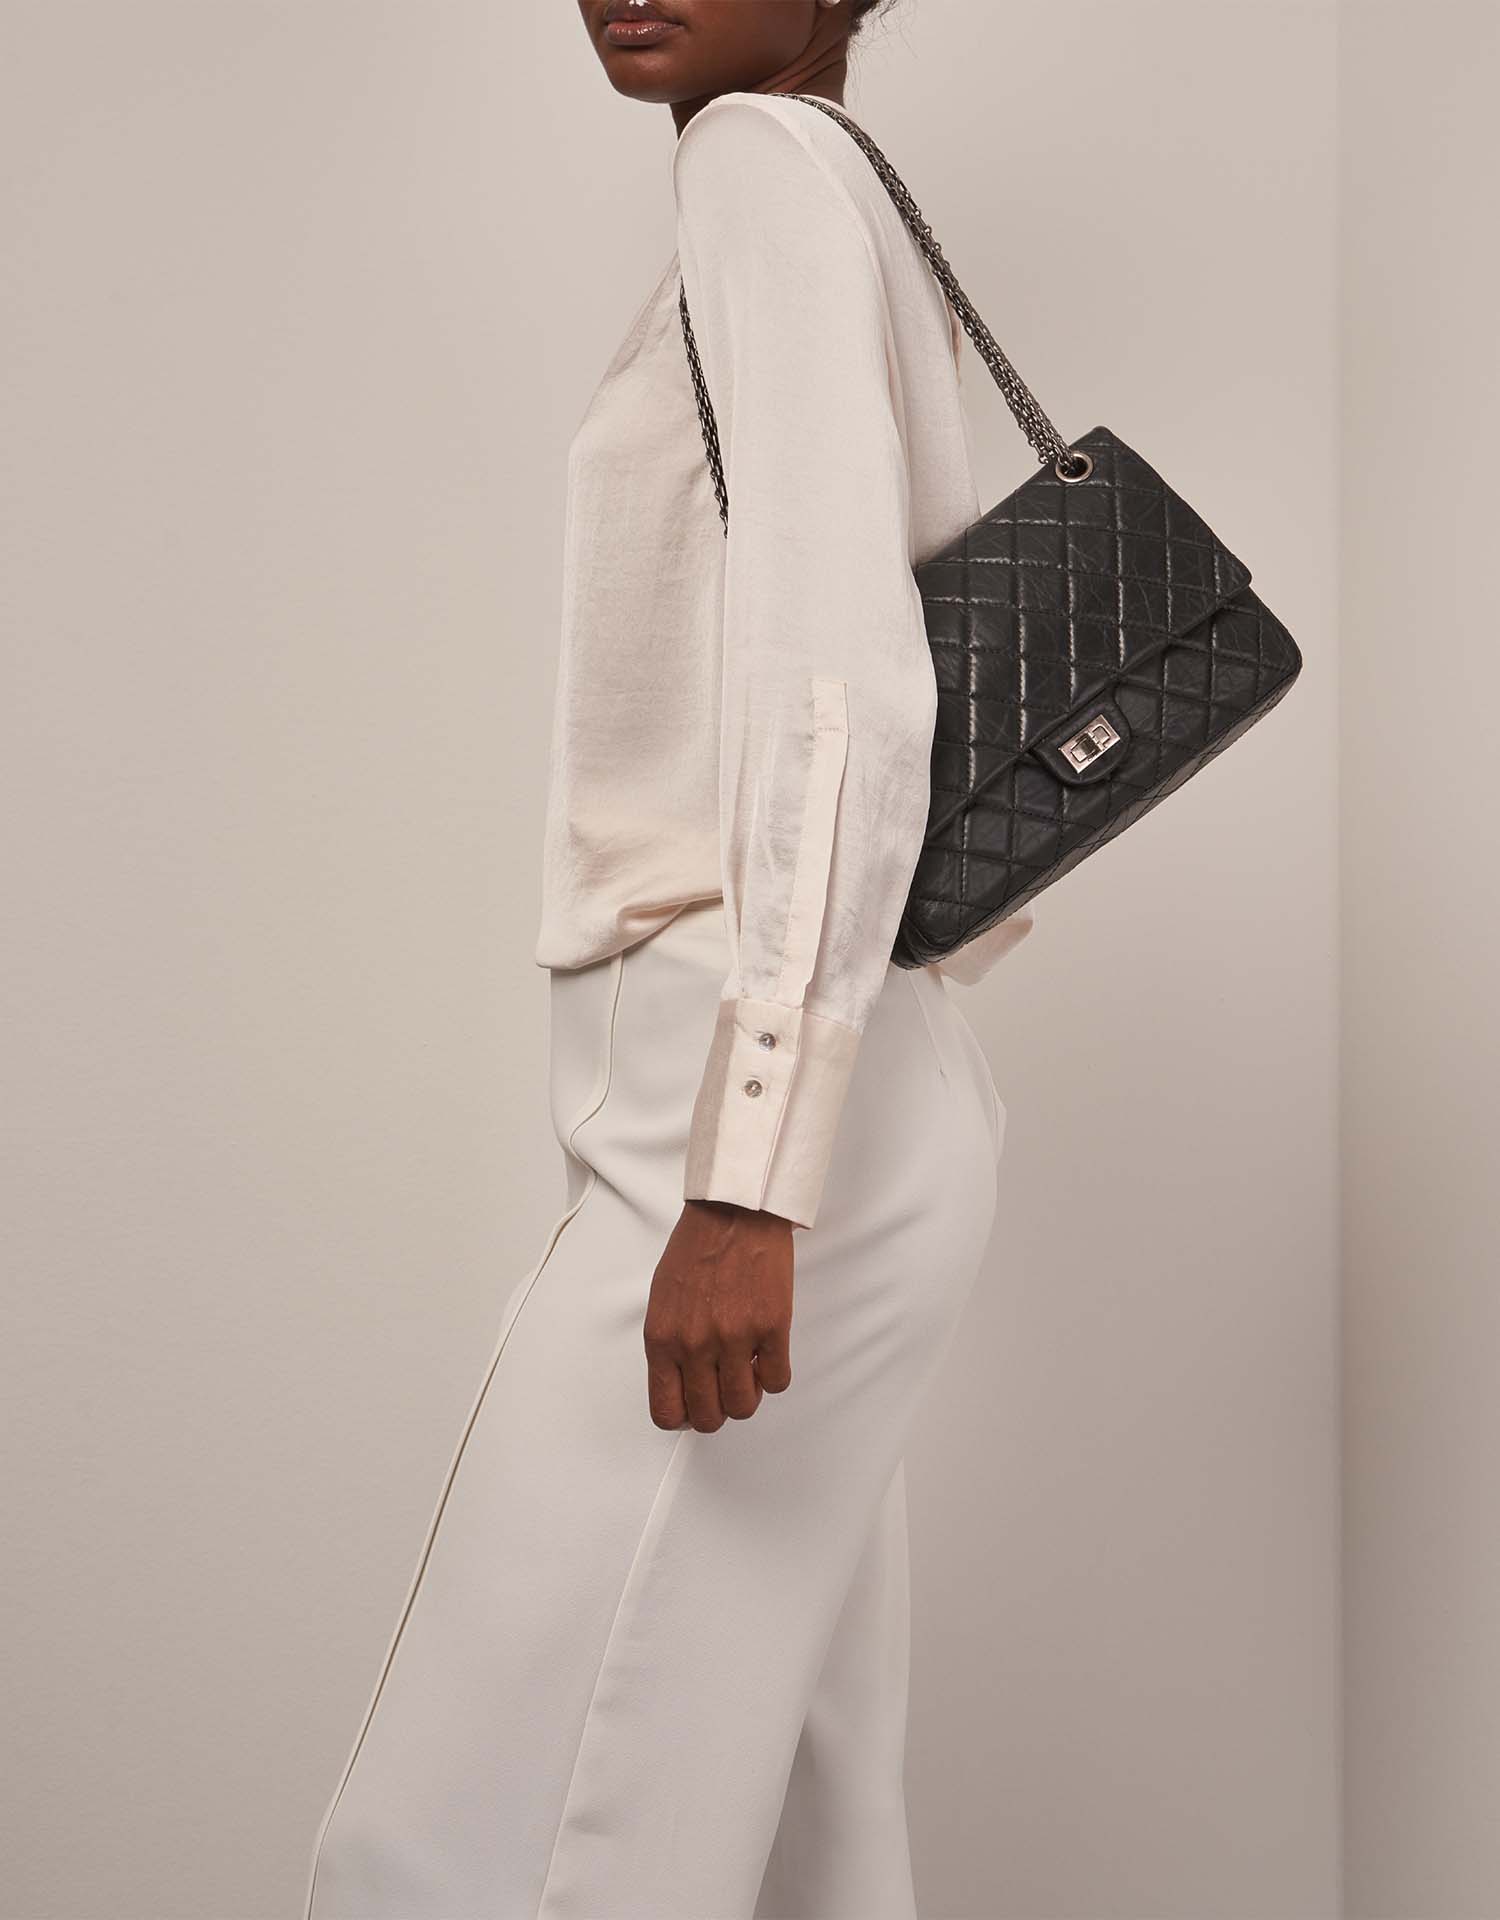 Chanel 255 226 Schwarz auf Modell 1 | Verkaufen Sie Ihre Designer-Tasche auf Saclab.com